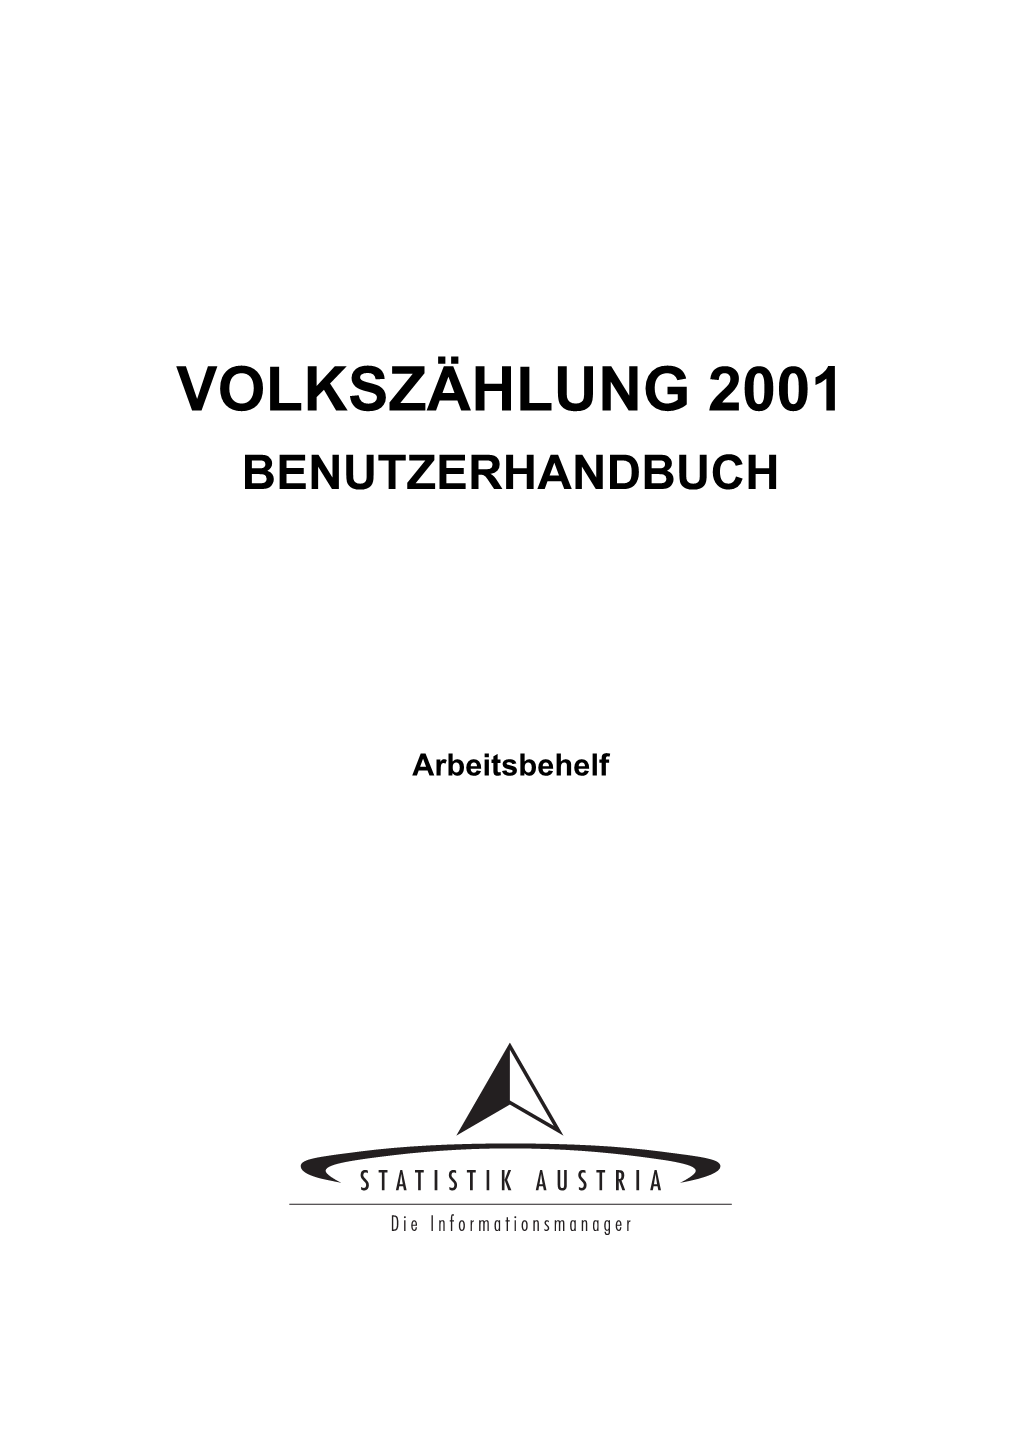 Volkszählung 2001 Benutzerhandbuch